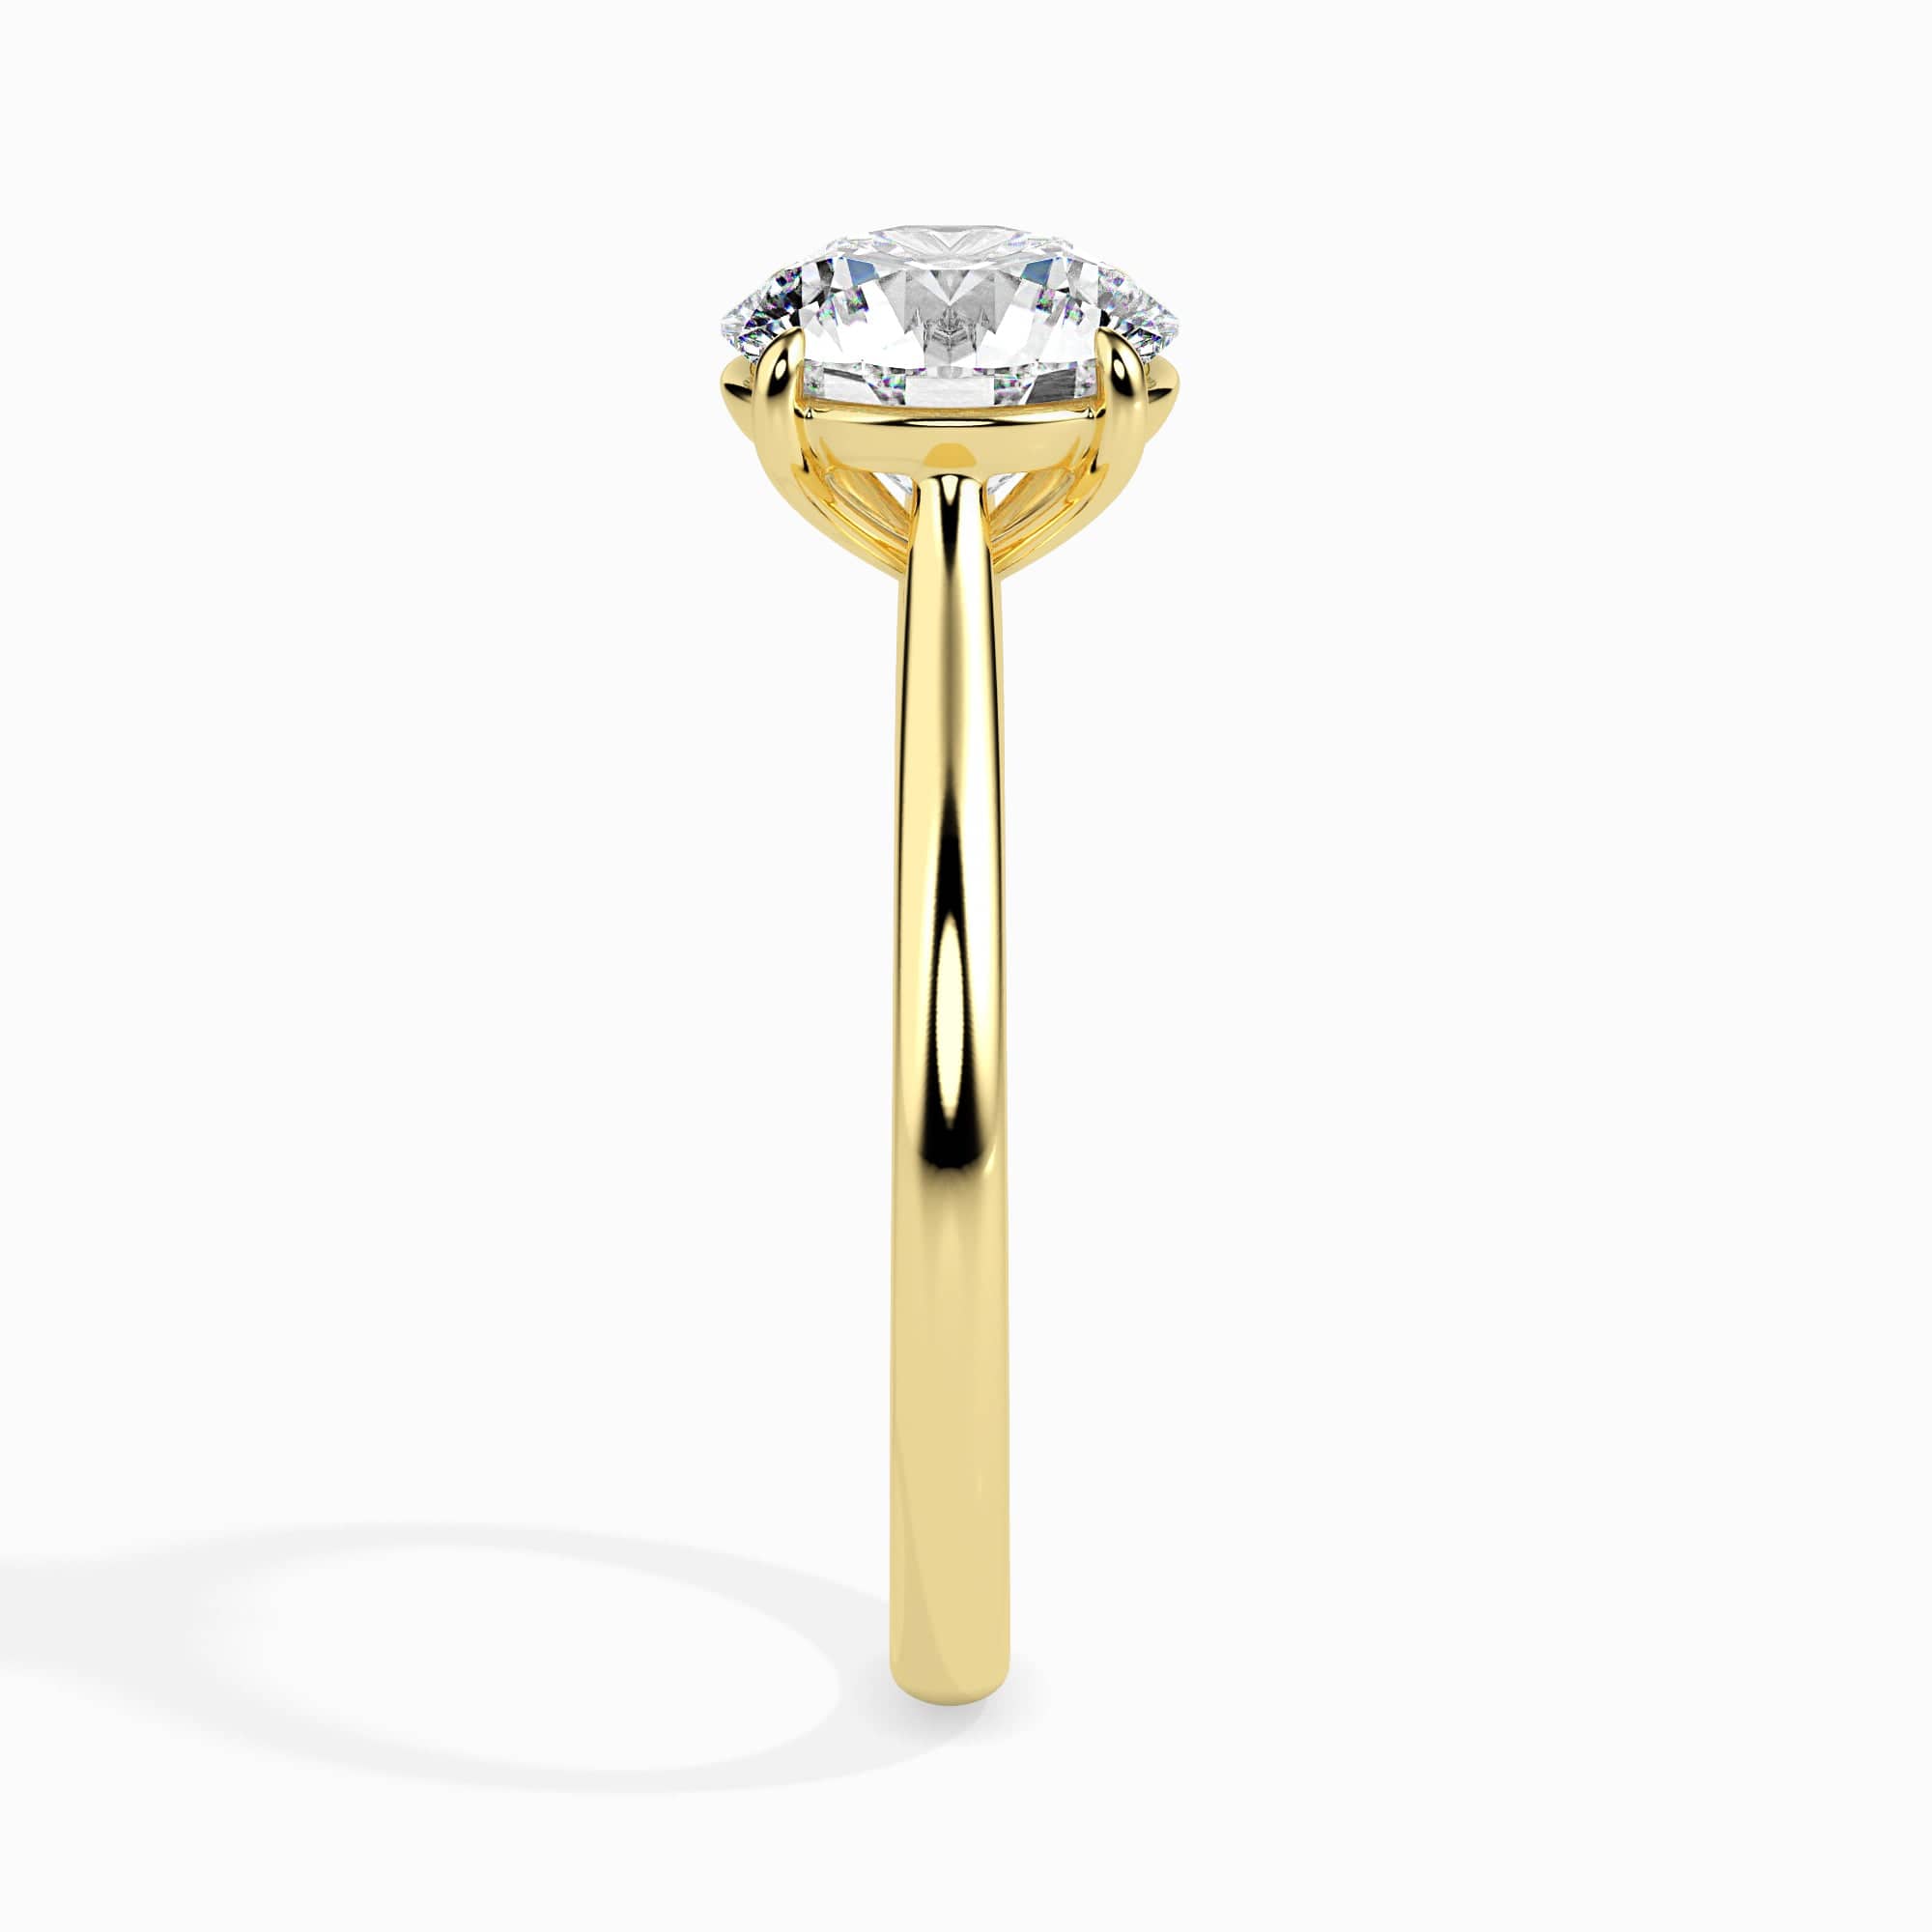 Buy AVSAR 14KT Rose Gold Ring for Women at Amazon.in